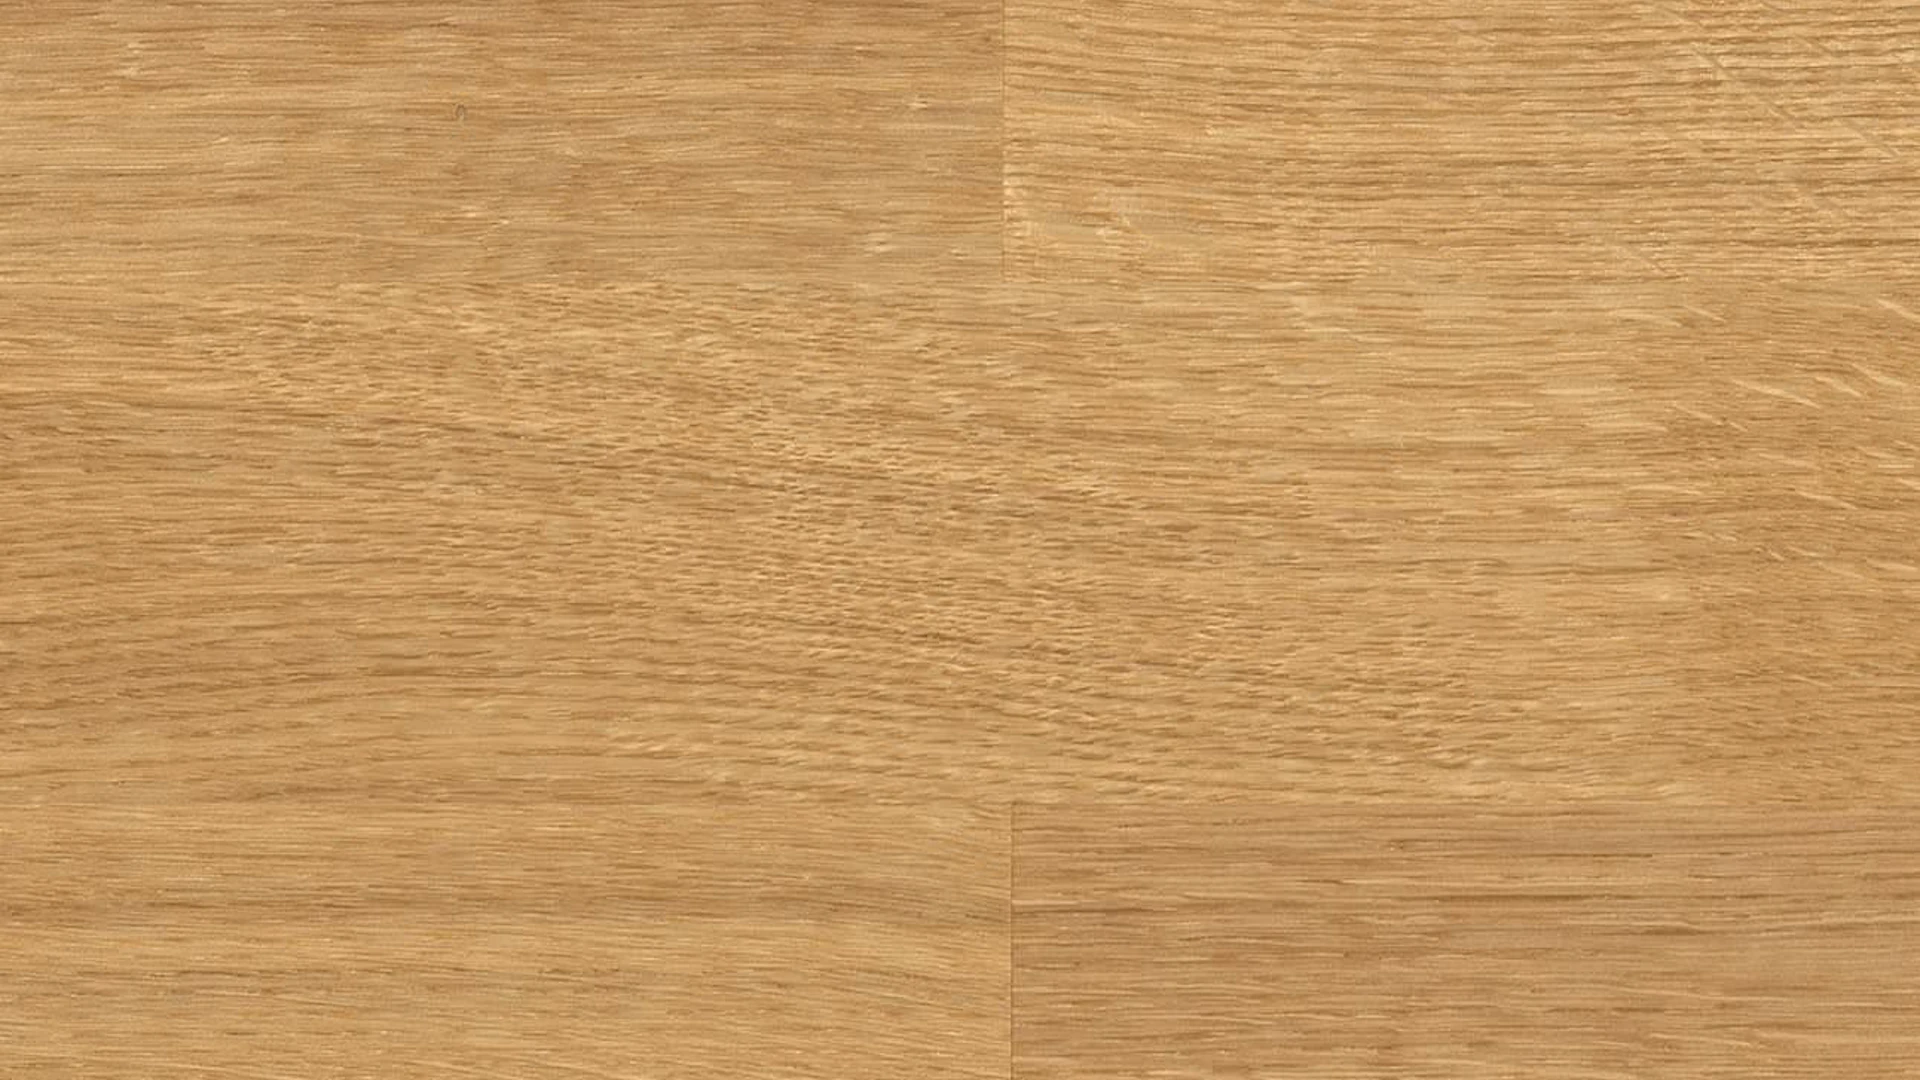 Haro Parquet Flooring - Series 4000 naturaDur Oak Exquisite (524689)